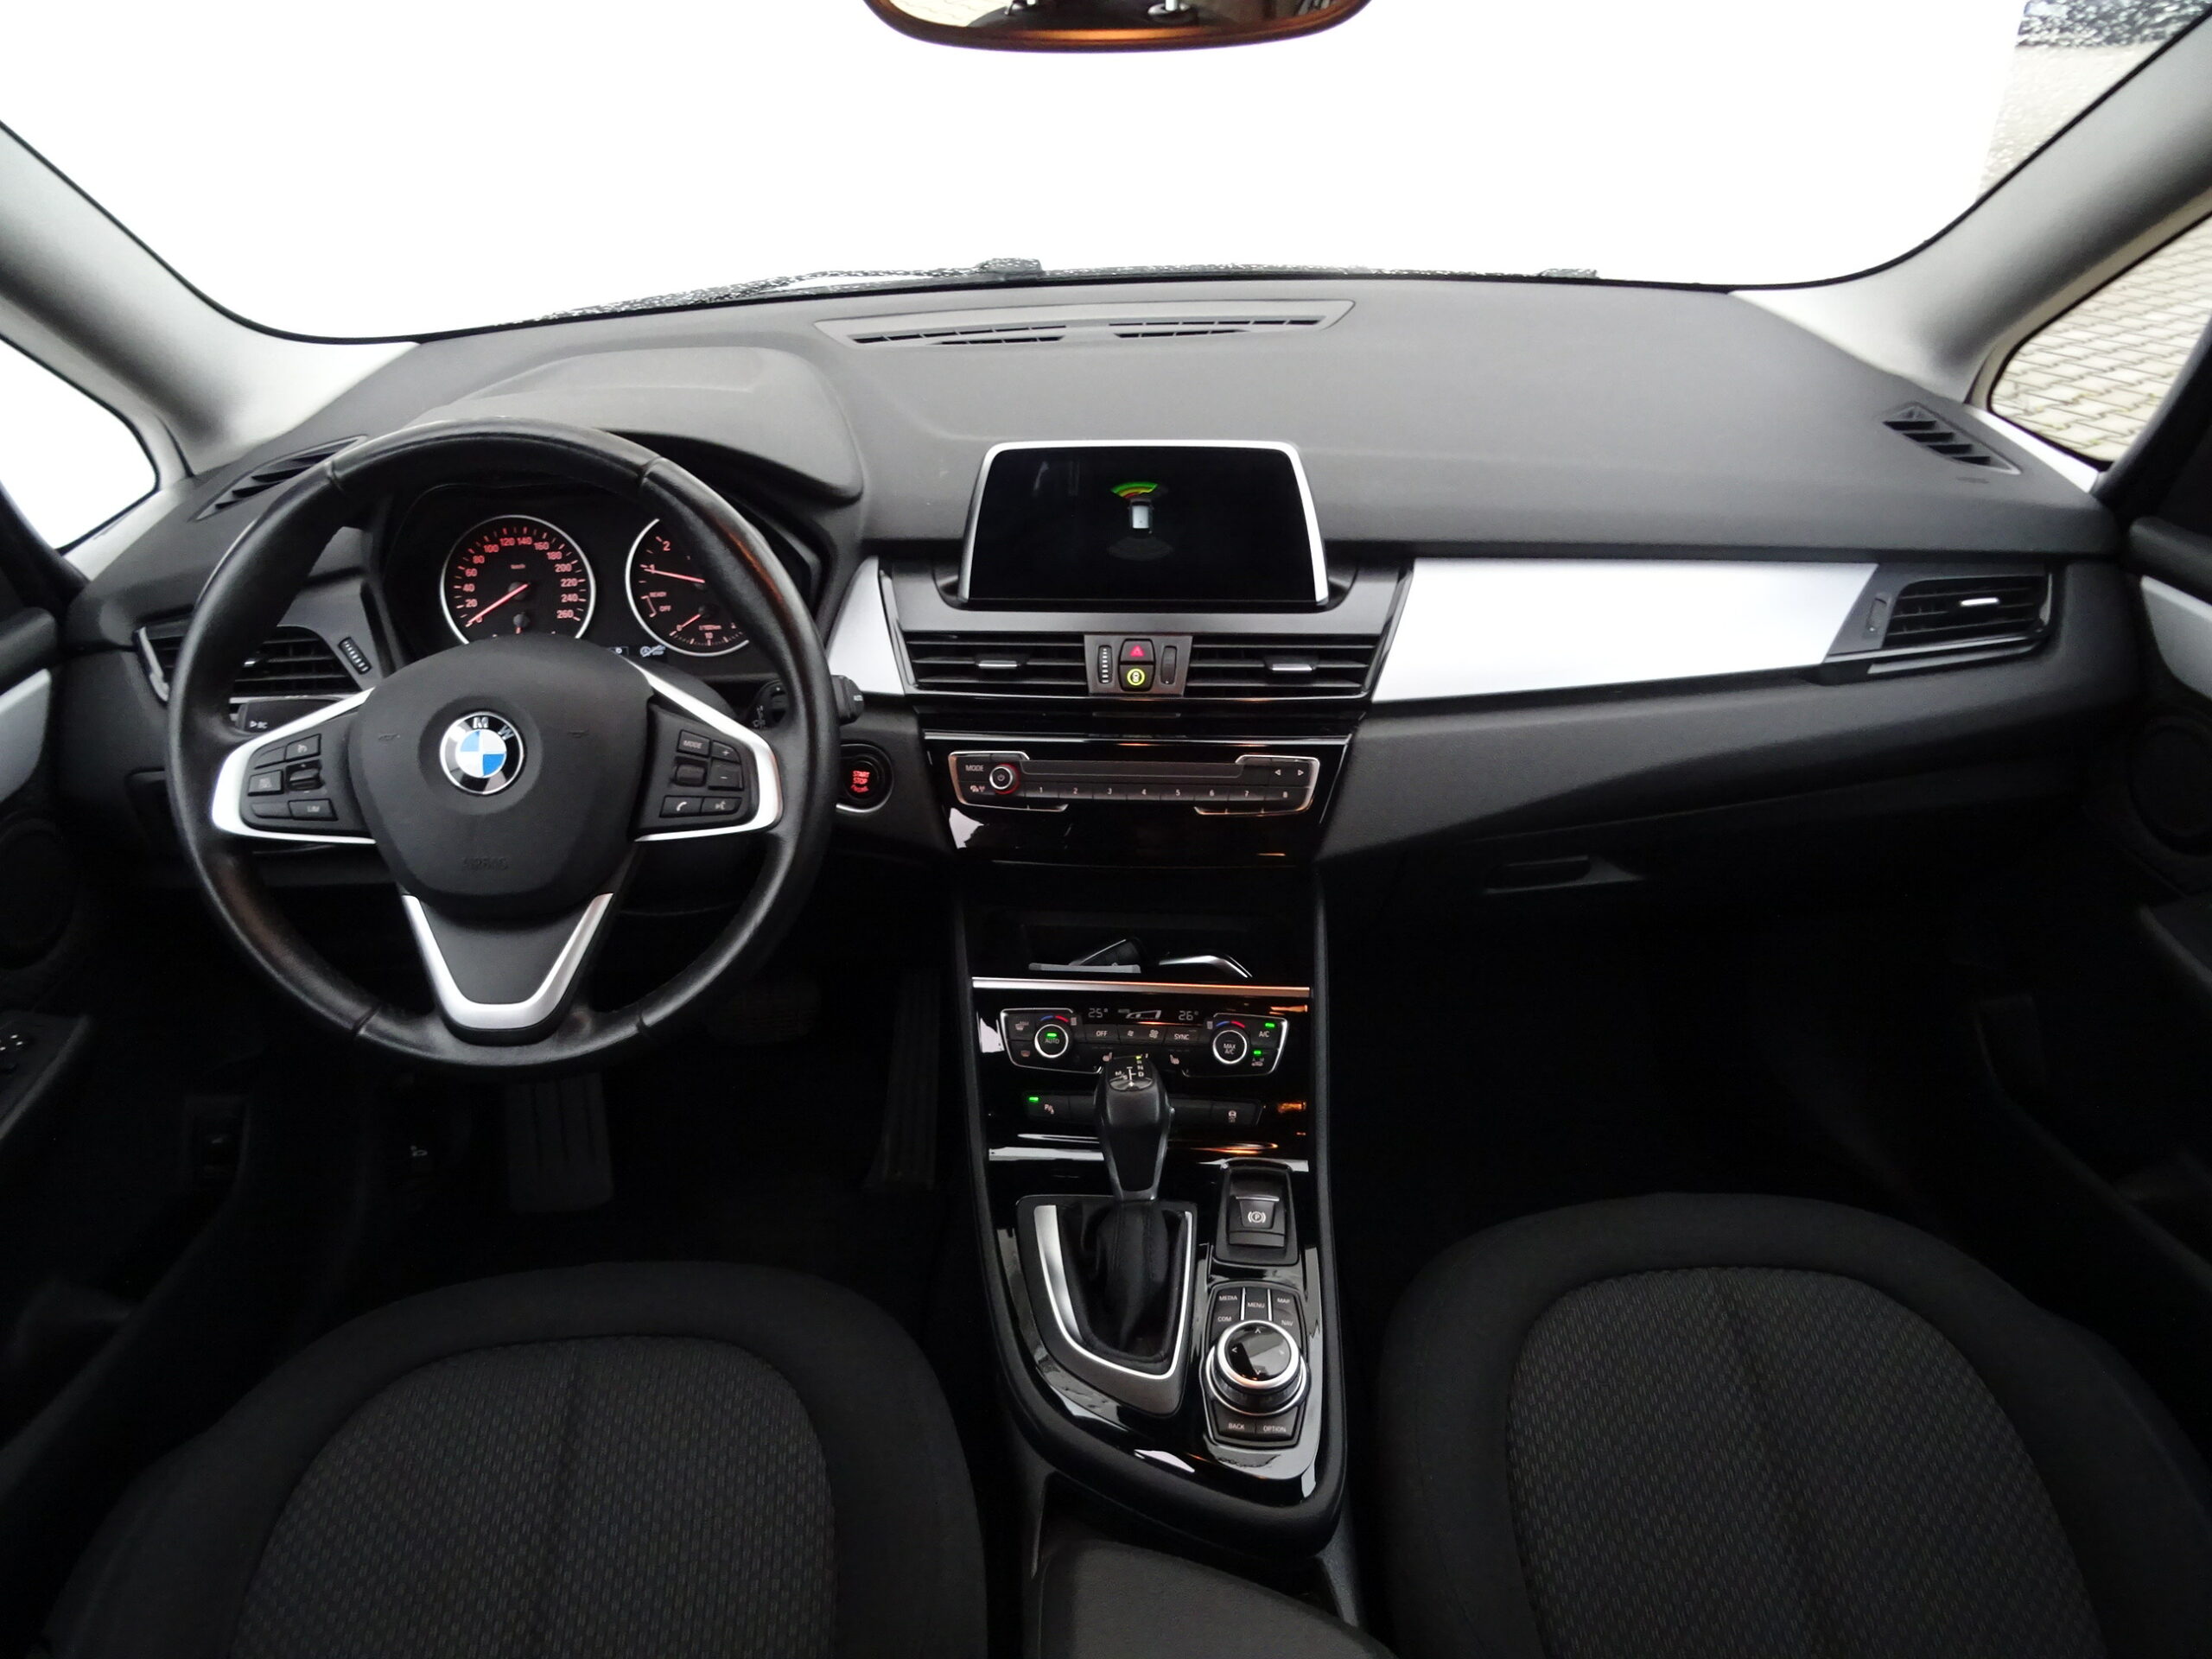 BMW 218i Gran Tourer